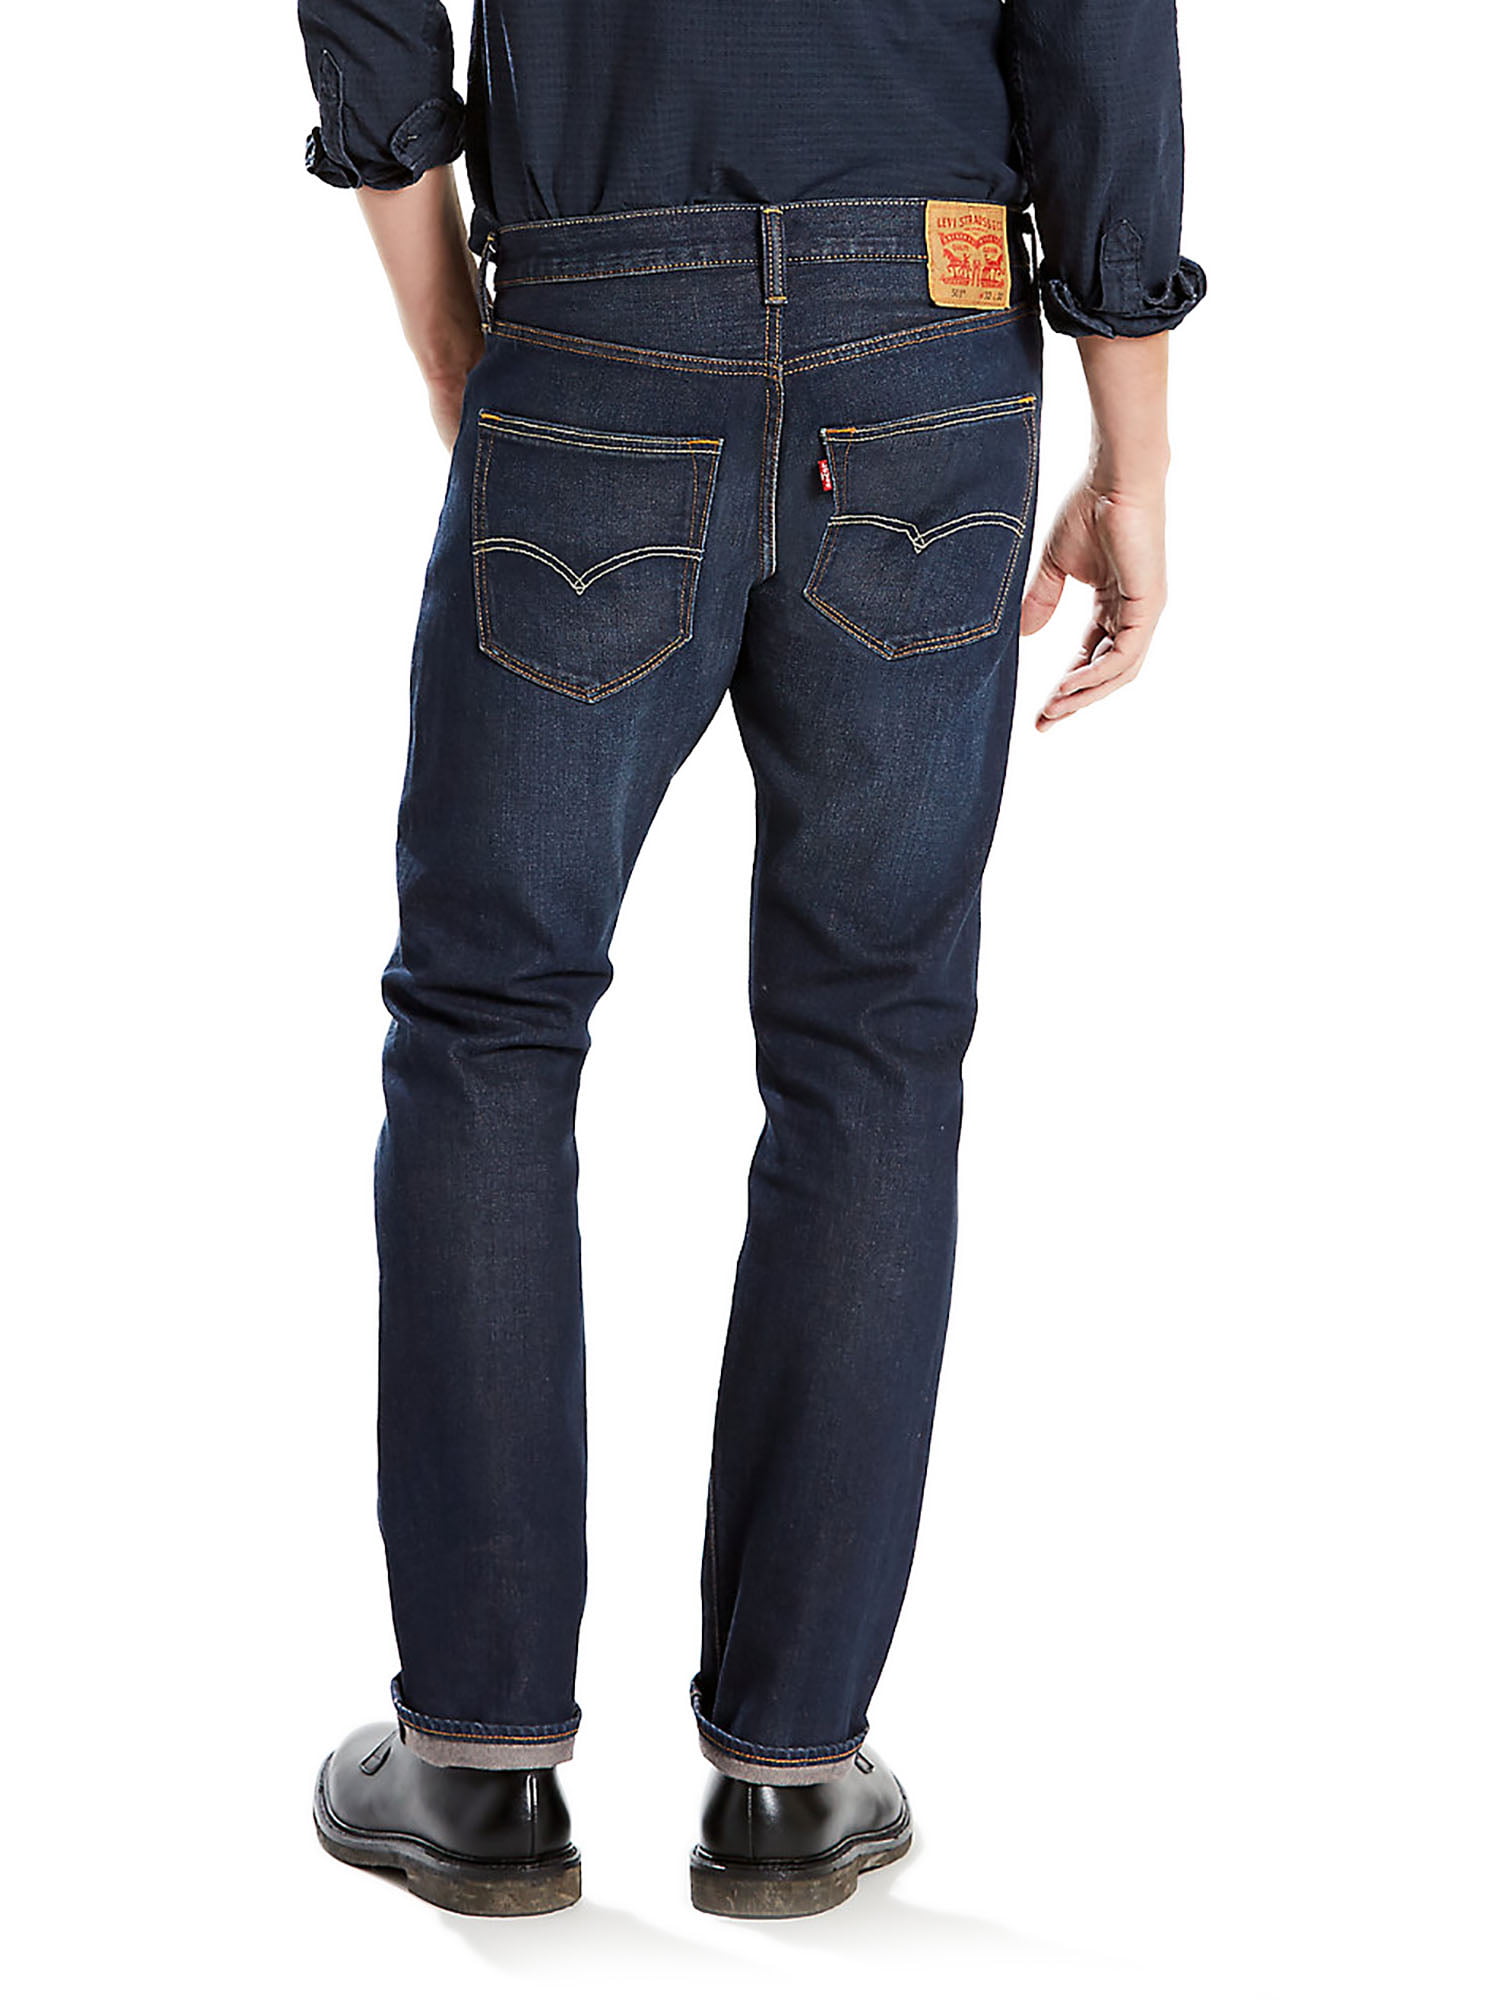 Descubrir 50+ imagen levi’s men’s 501 original fit stretch jeans